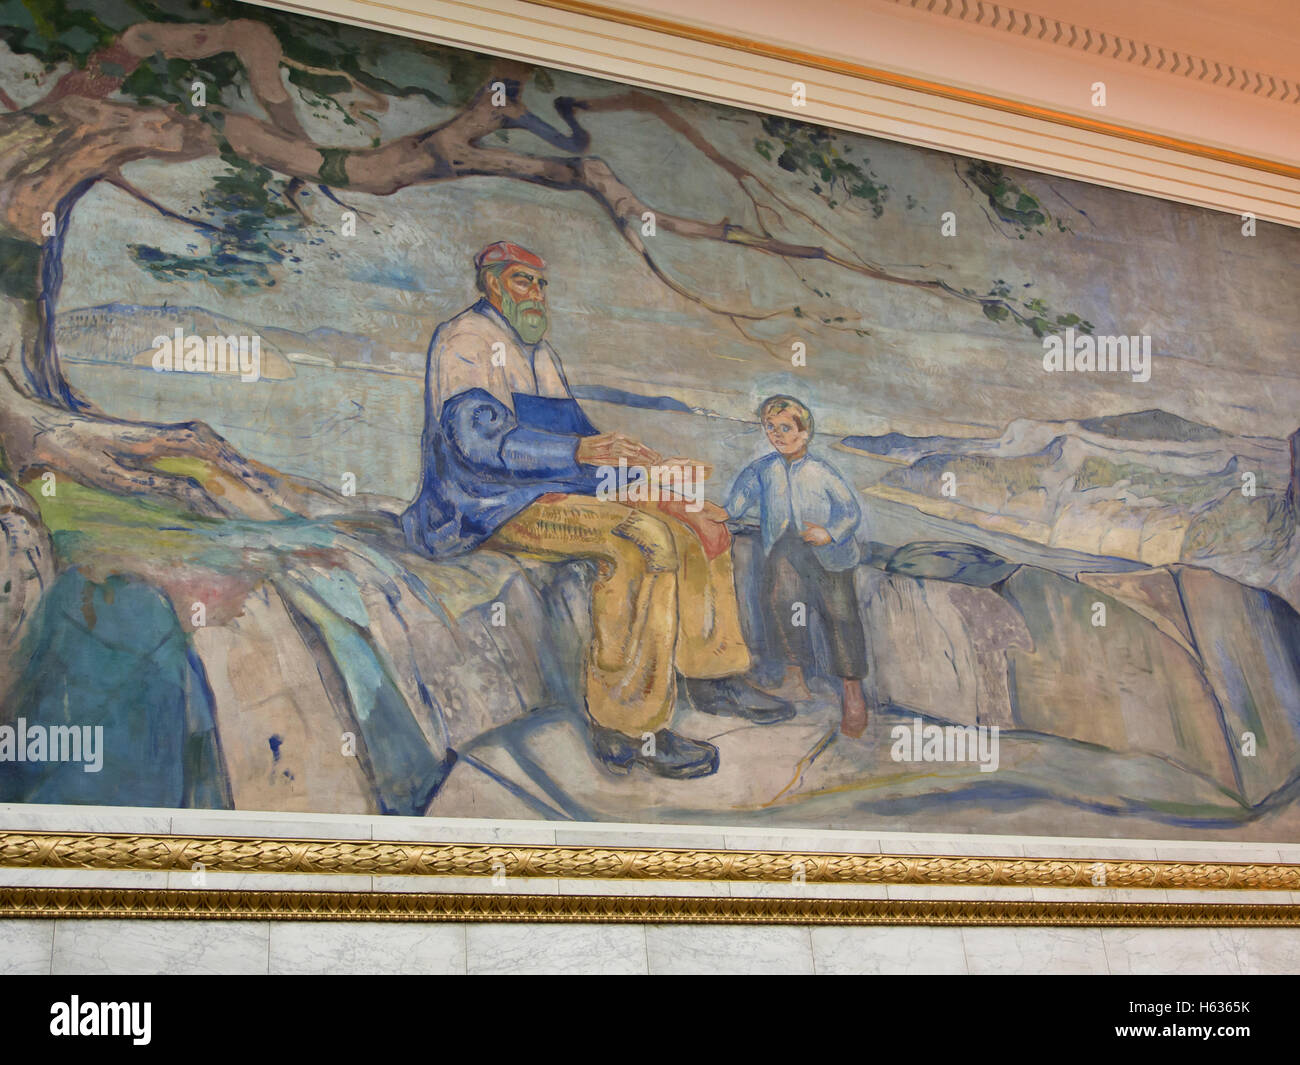 Universitetets Aula, Oslo University Hall, hat drei monumentale Gemälde / Wandmalereien von Edvard Munch, "Historien", "Geschichte" Stockfoto